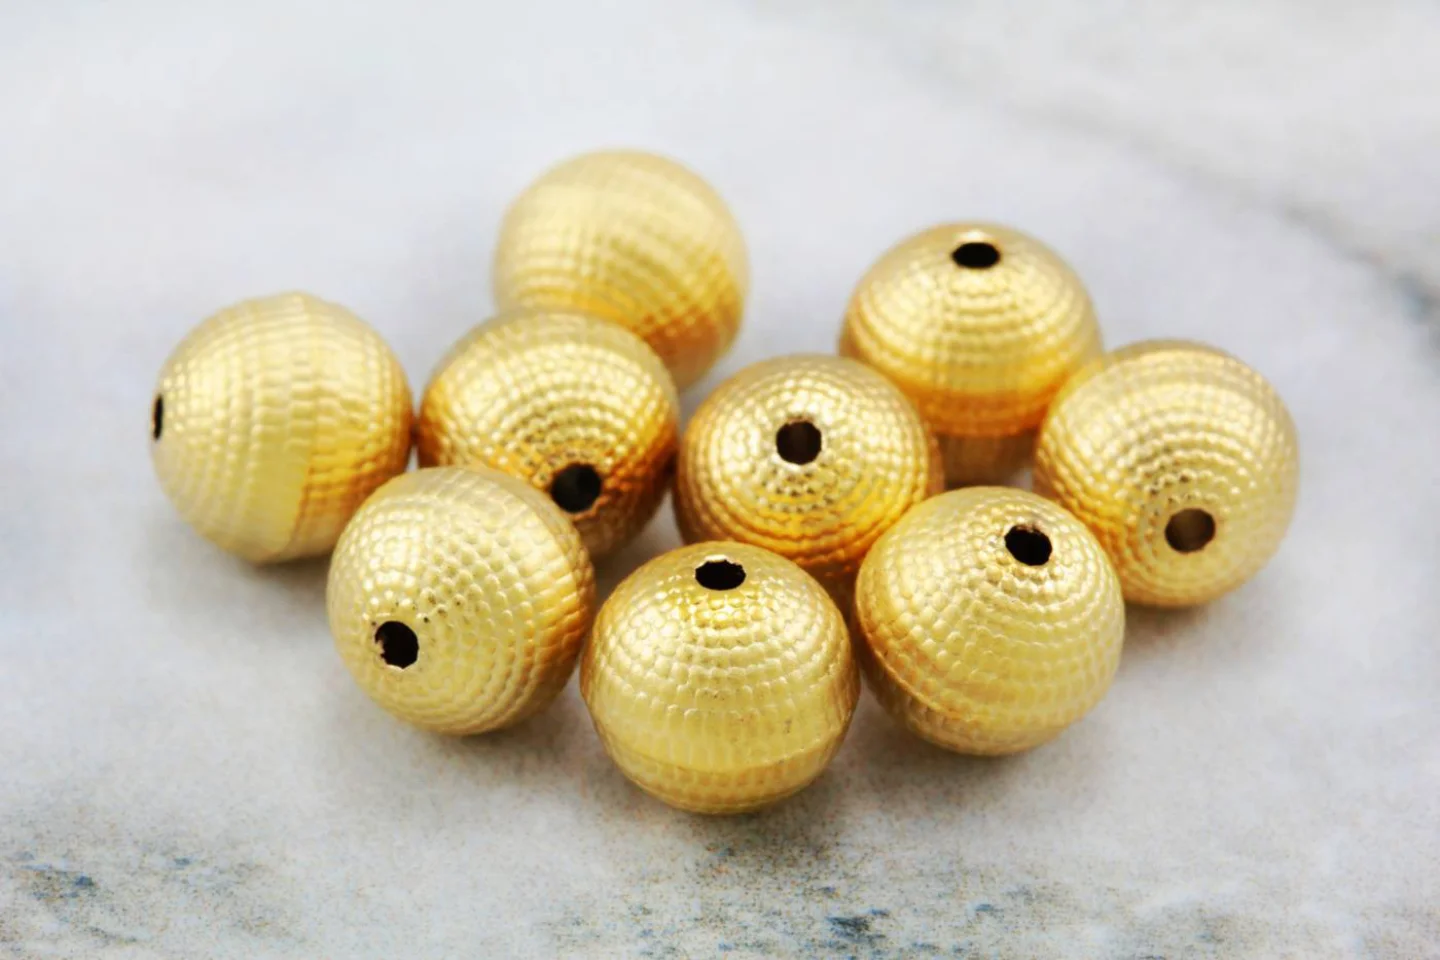 8mm-gold-metal-textured-ball-beads.